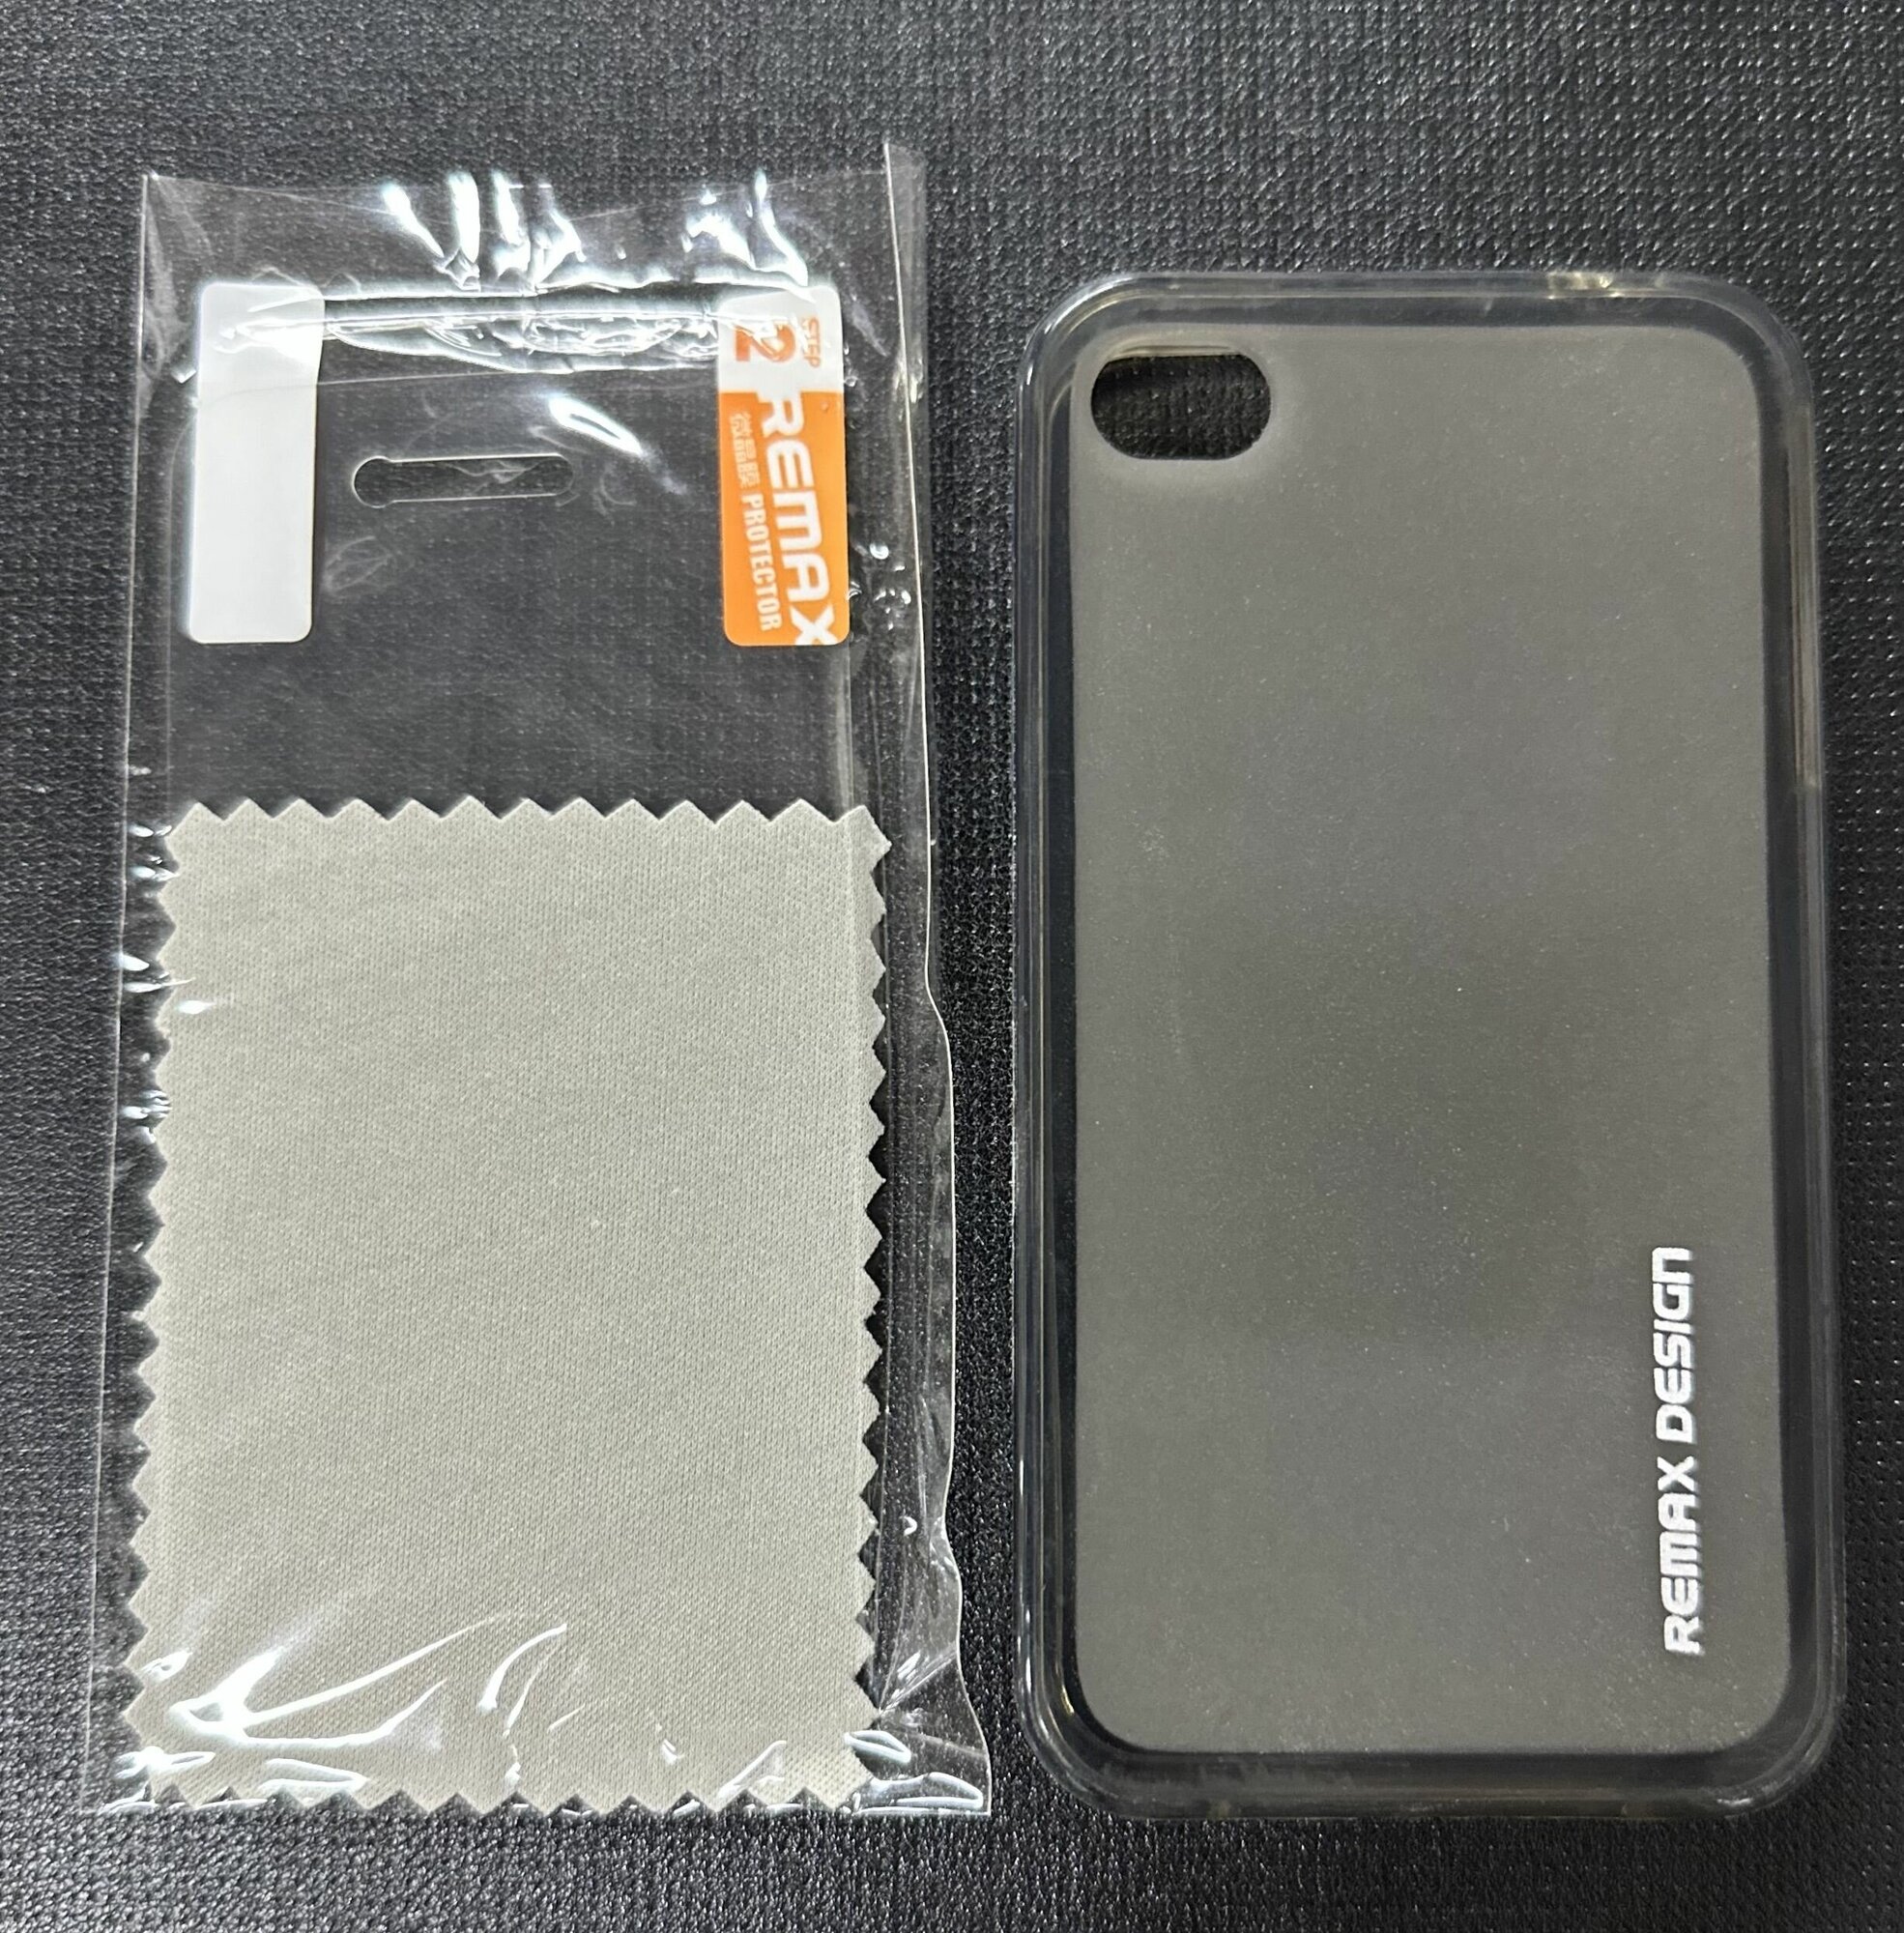 Чехол накладка силиконовая для iPhone 4S/iPhone 4G/iPhone 4, черный-матовый,+защитная пленка на экран в подарок